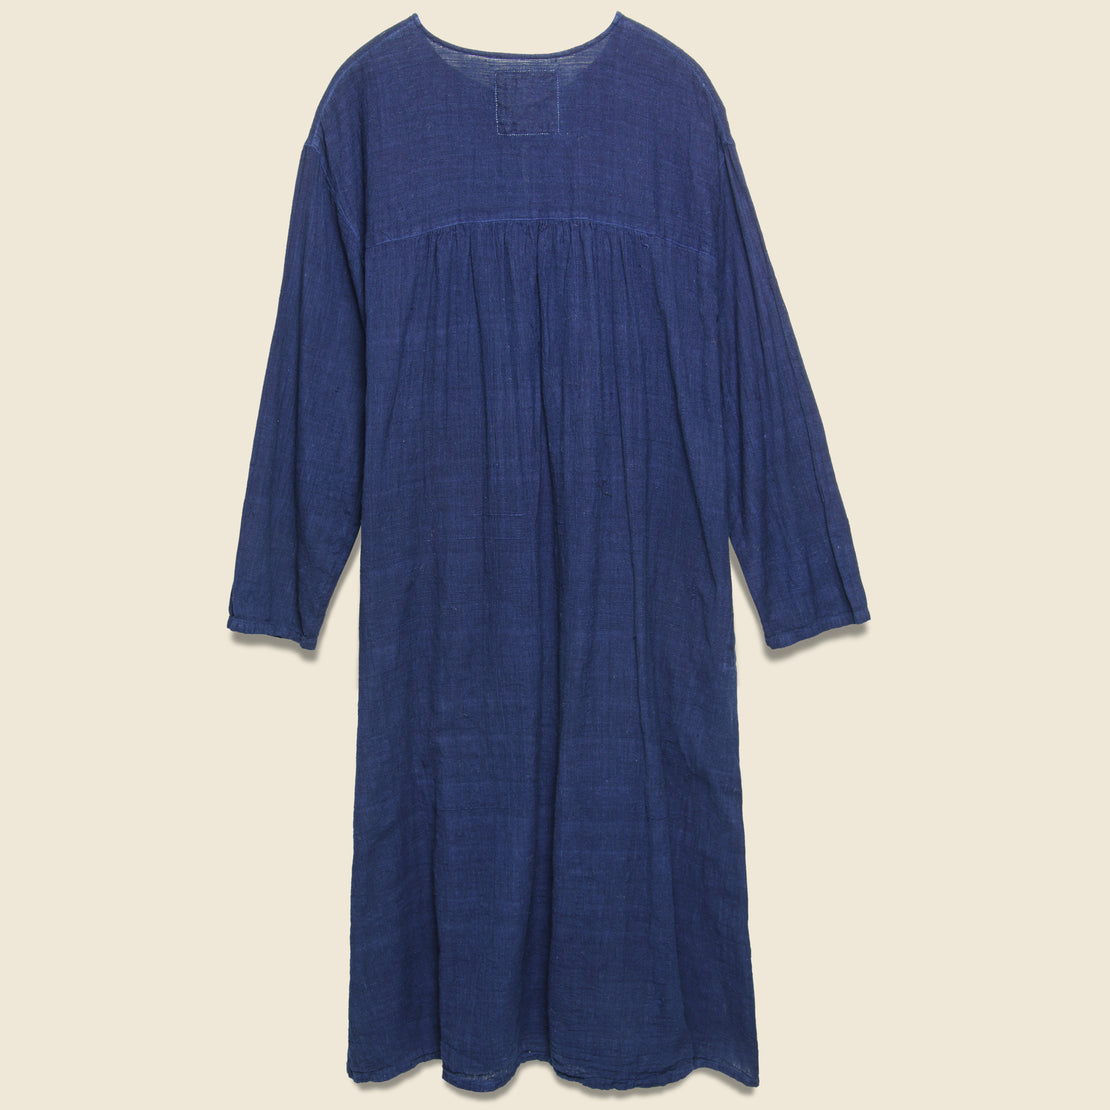 Caftan - Indigo - Auntie Oti - STAG Provisions - W - Onepiece - Dress